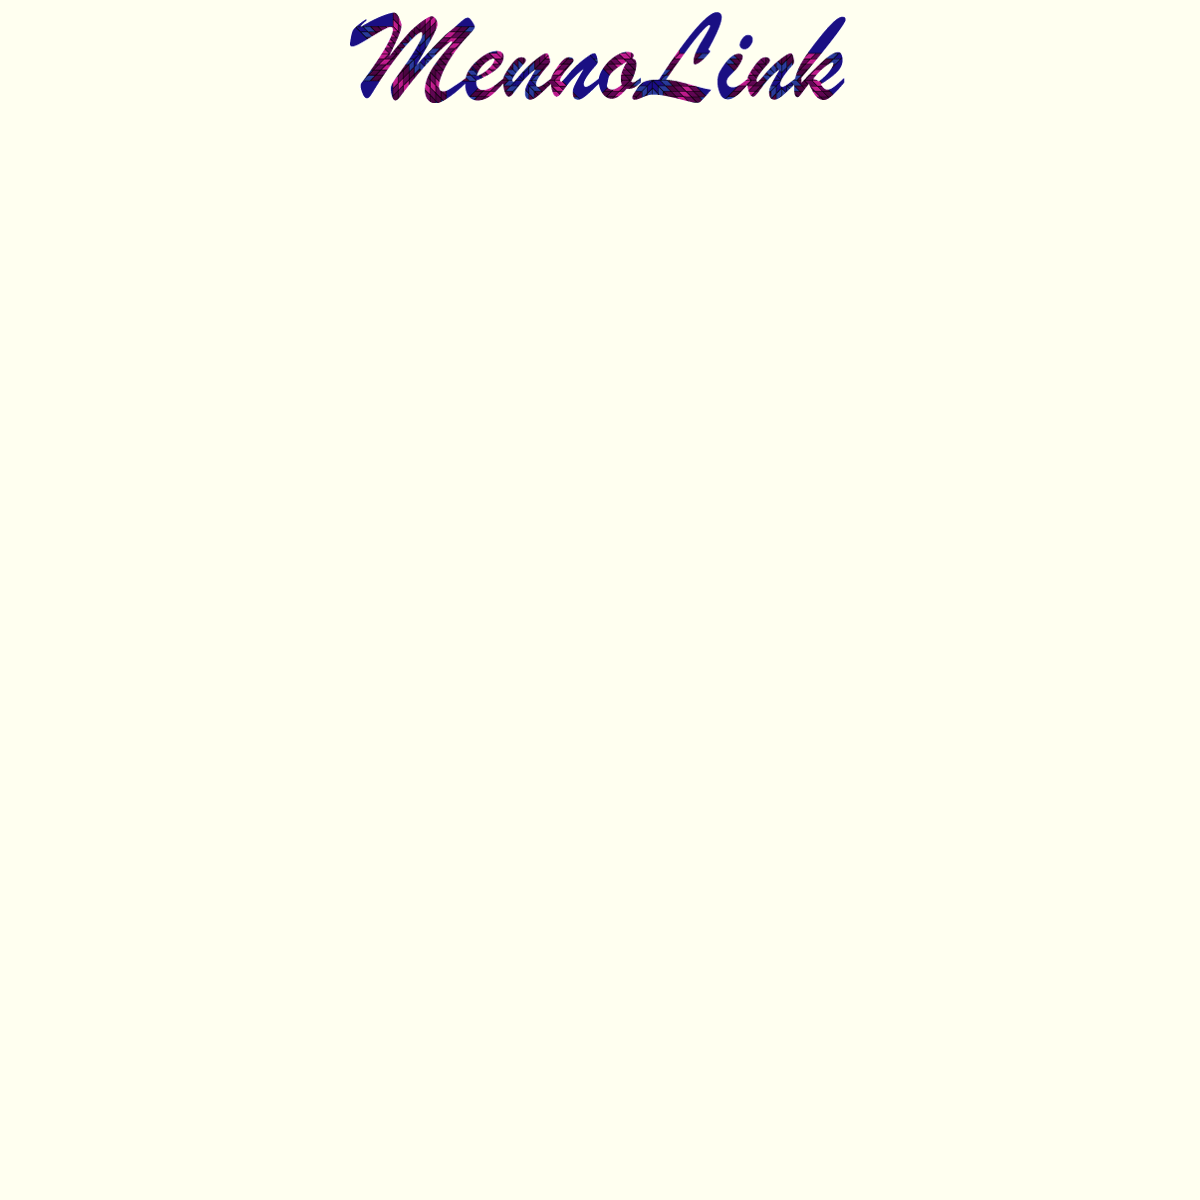 A complete backup of mennolink.org